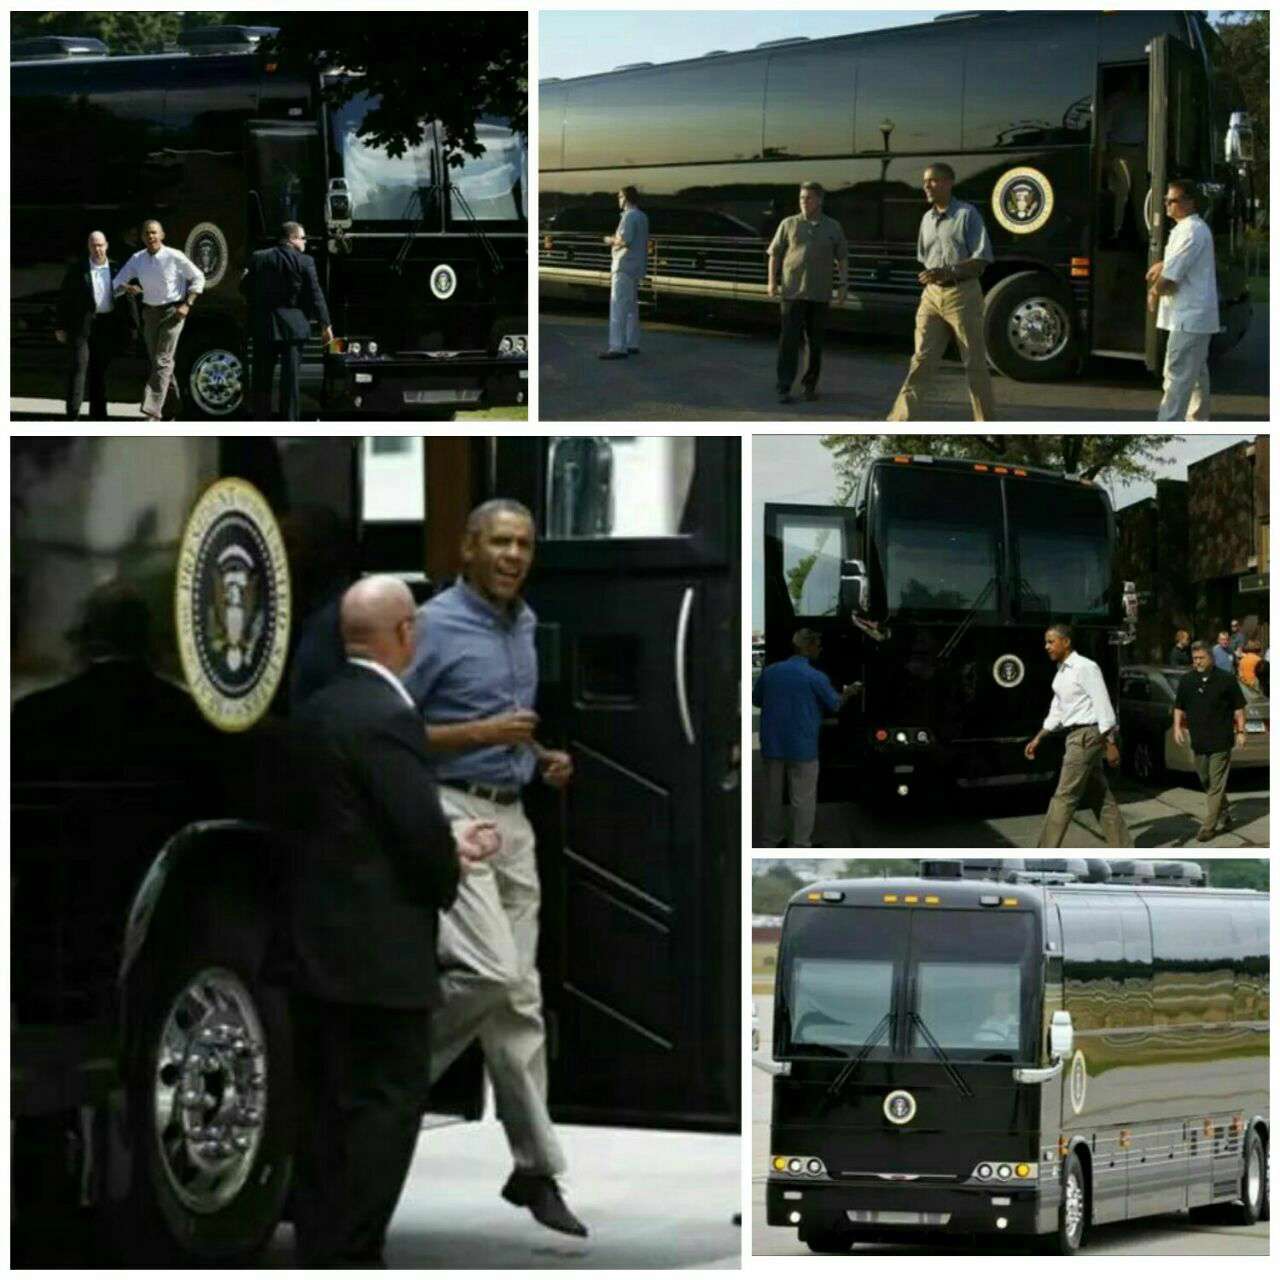 اتوبوس اوباما، امن ترین وسیله حمل و نقل بین شهری